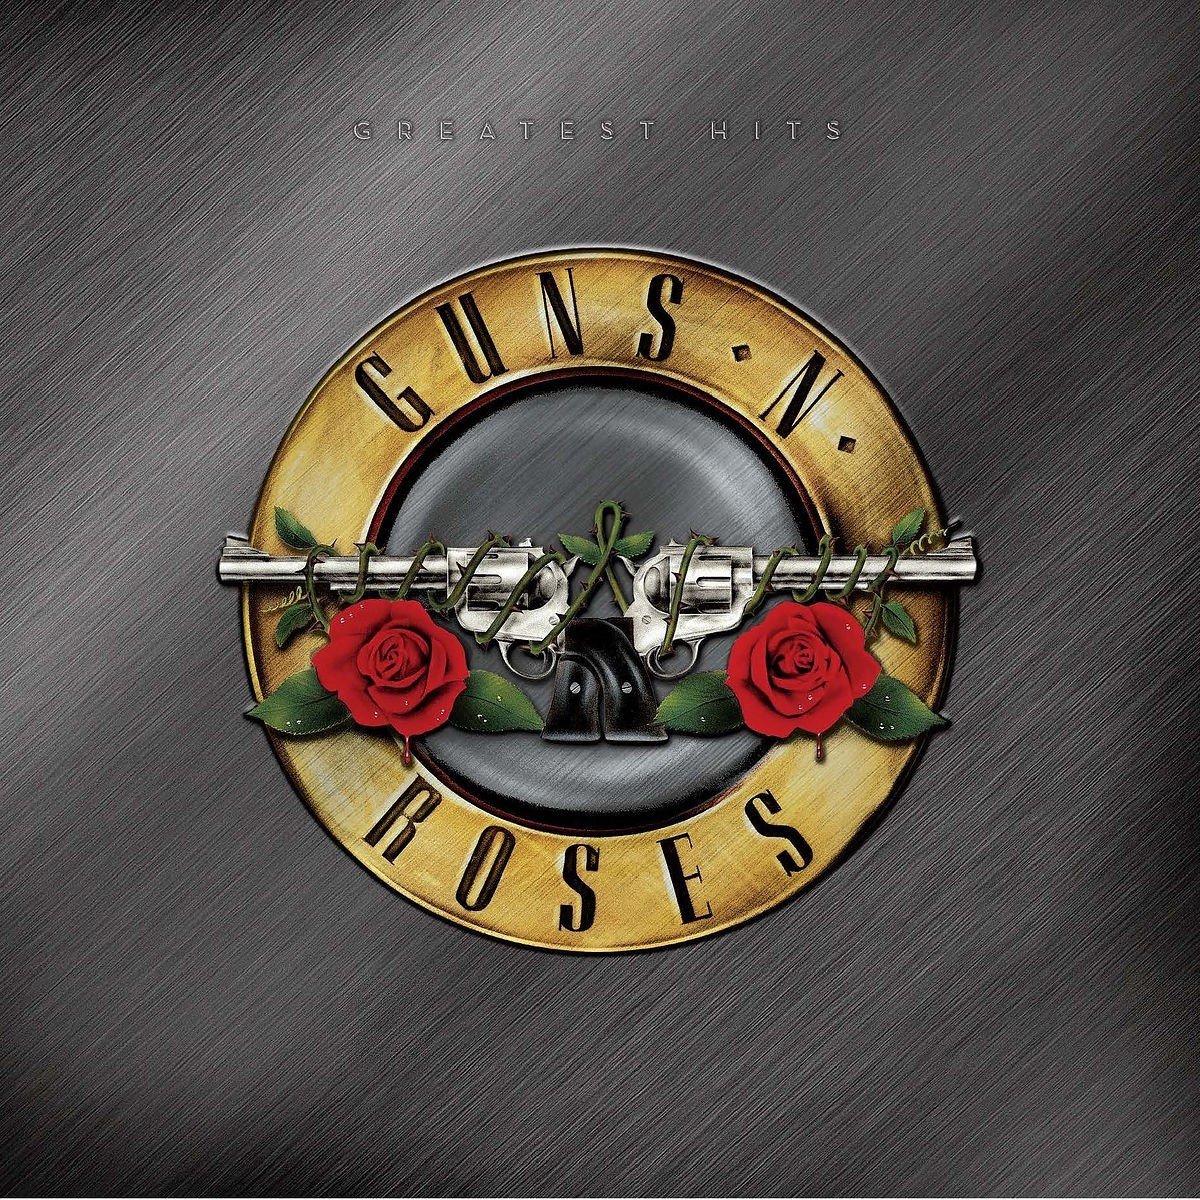 Guns N' Roses - Greatest Hits (2 LP) - Guns N' Roses